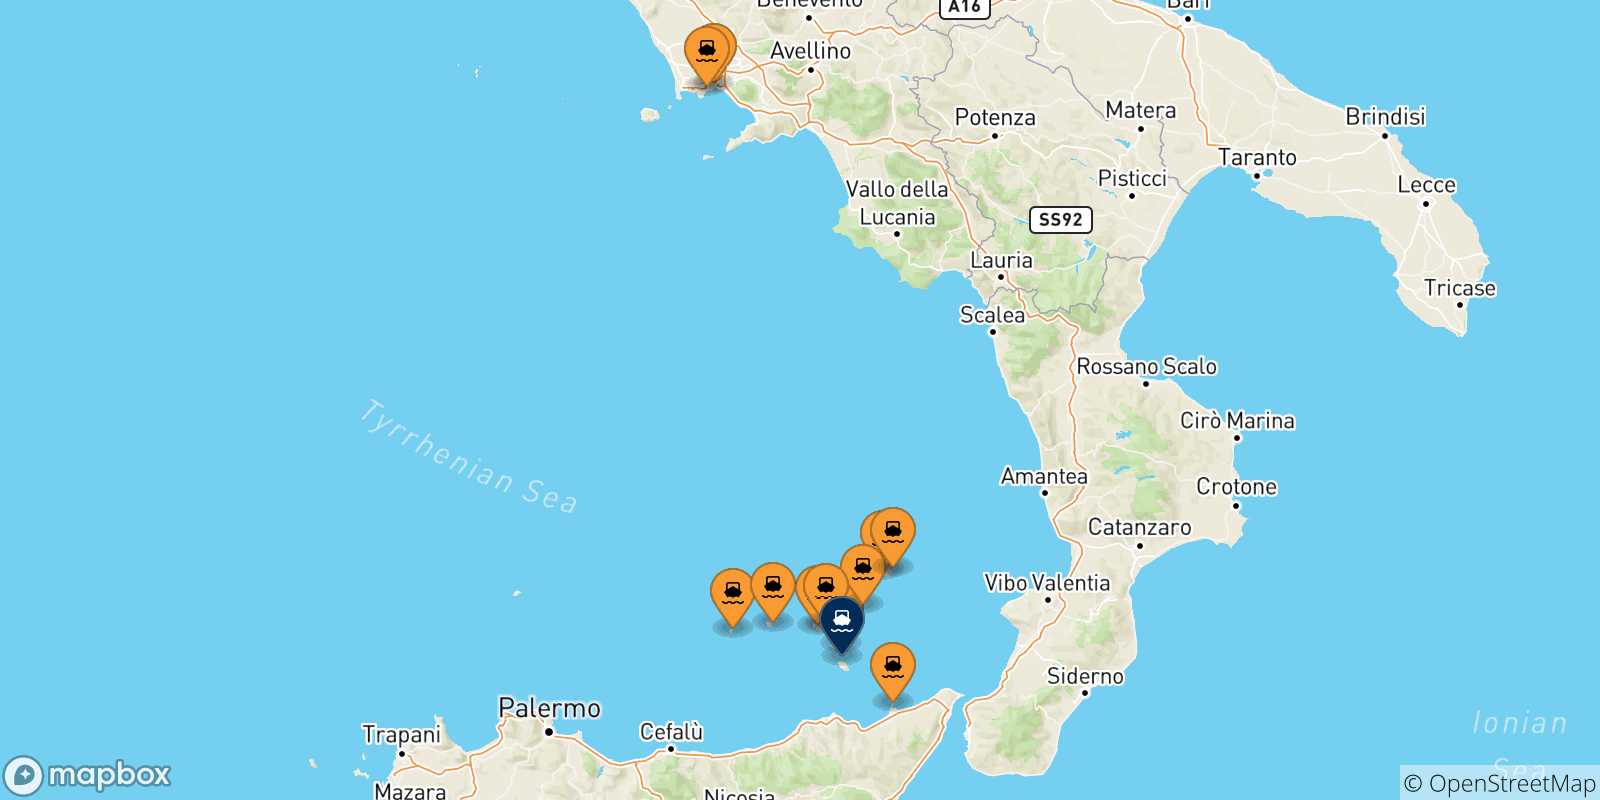 Mappa delle possibili rotte tra l'Italia e Vulcano